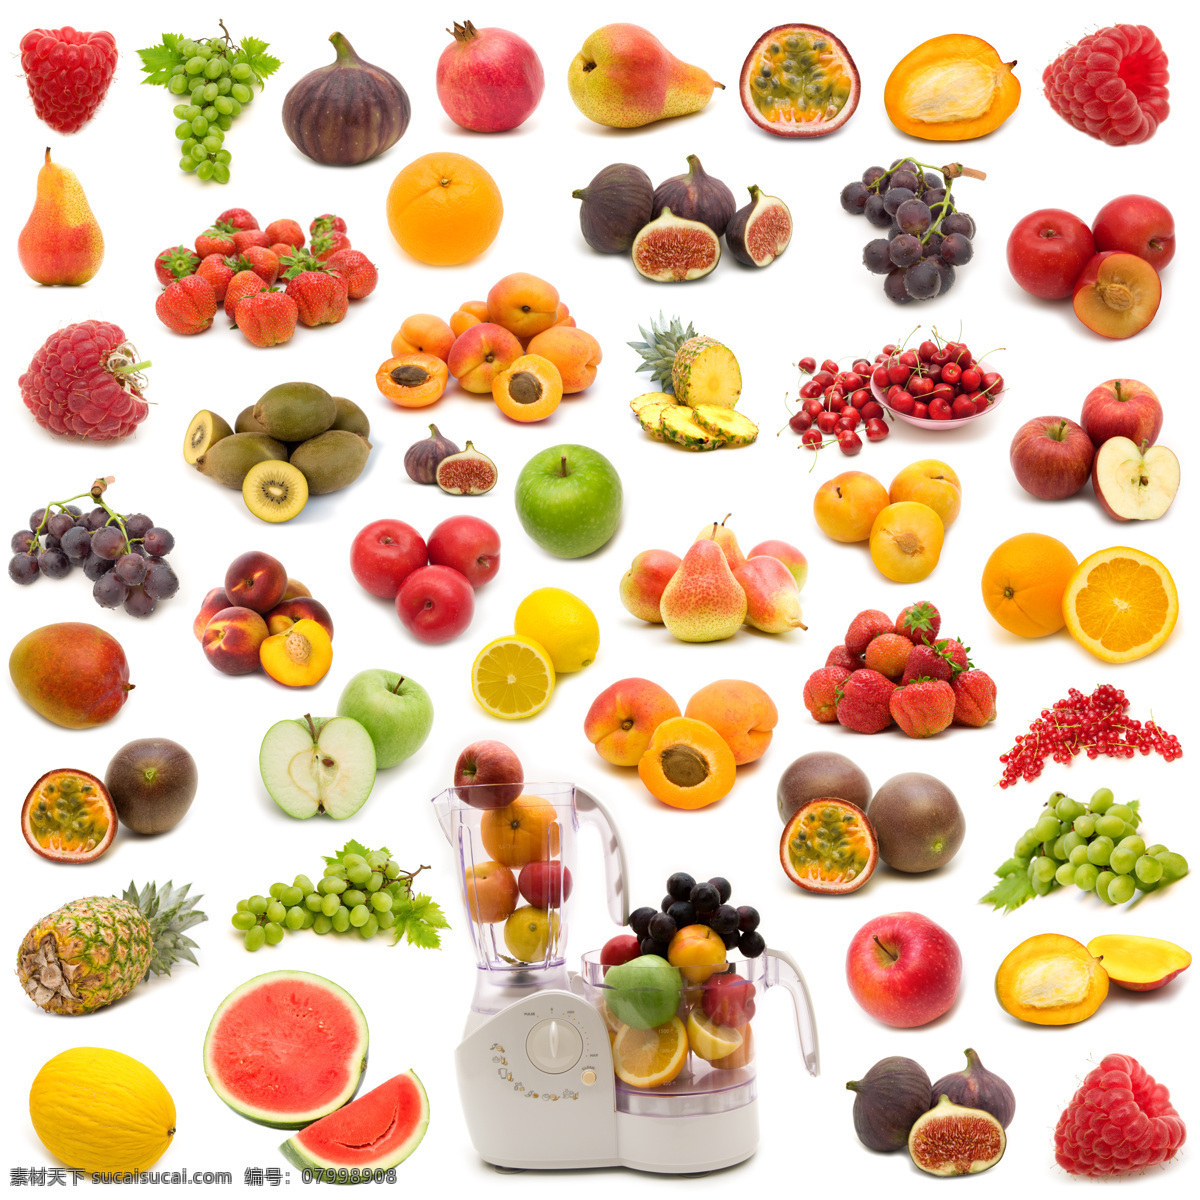 水果 蔬菜 背景 素材图片 苹果 哈蜜瓜 香蕉 樱桃 西瓜 青瓜 辣椒 菜花 新鲜水果 水果摄影 水果图片 餐饮美食